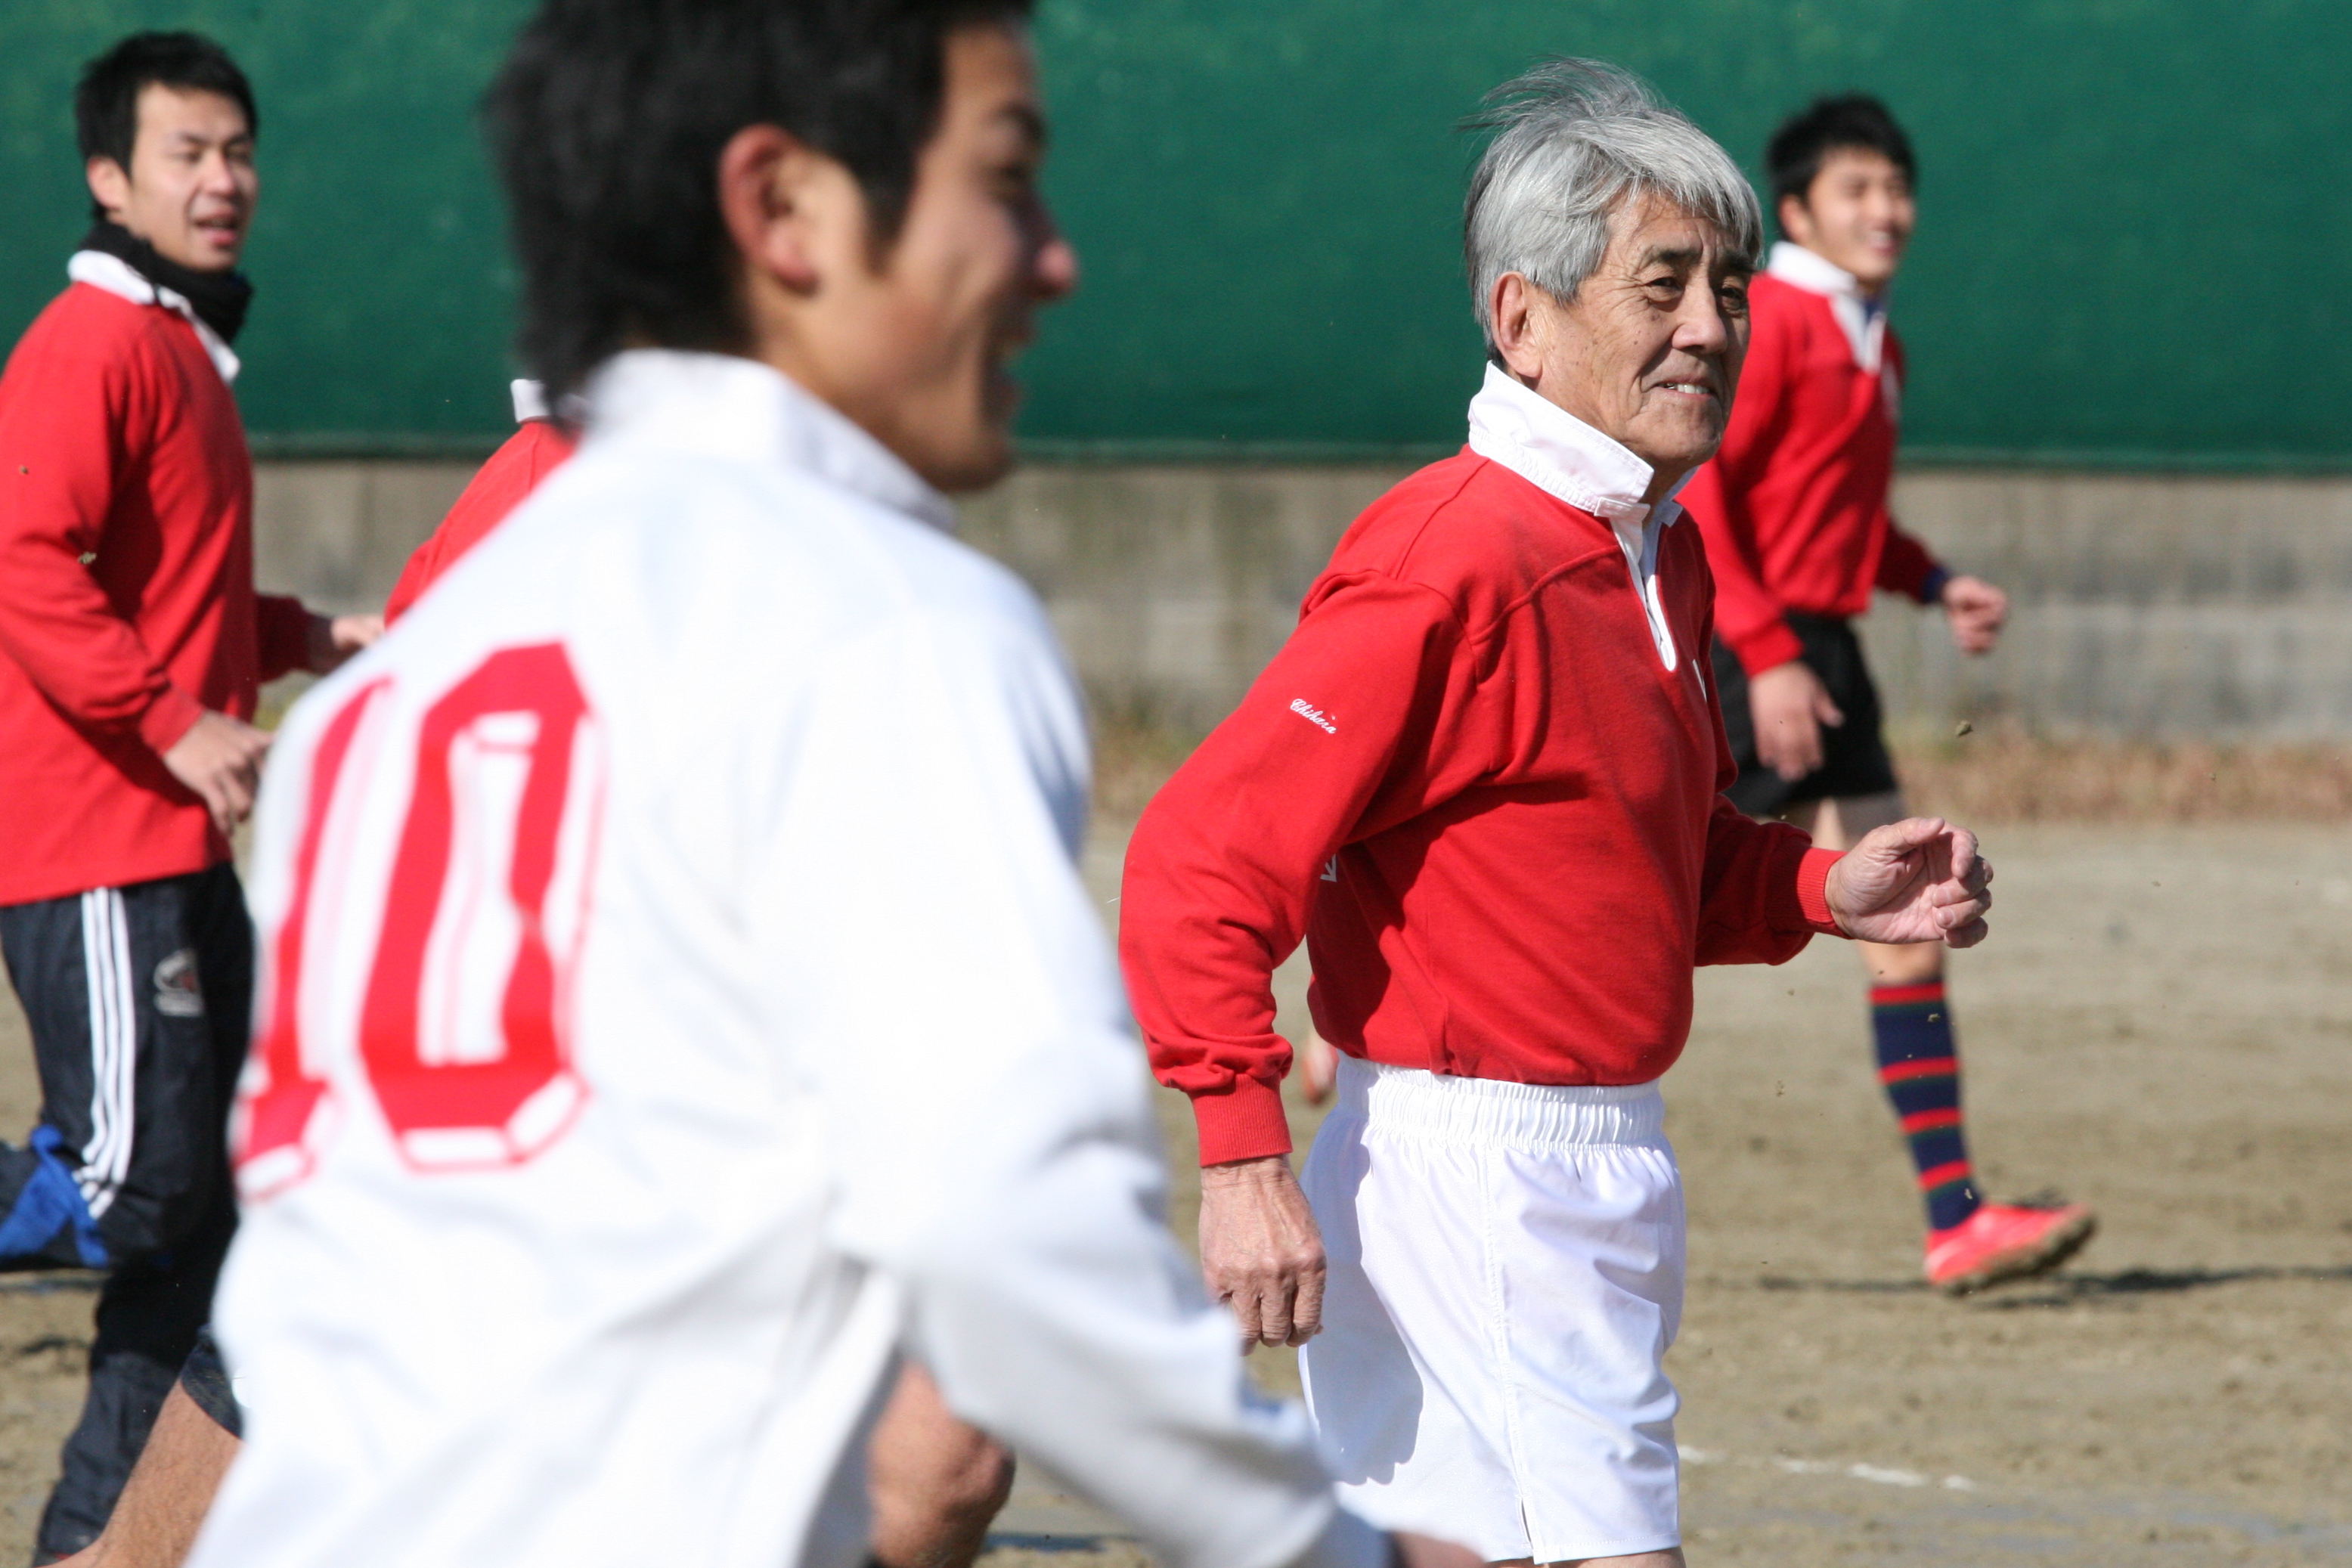 http://kokura-rugby.sakura.ne.jp/2010.3.1%E3%83%BBOB%E6%88%A61.JPG